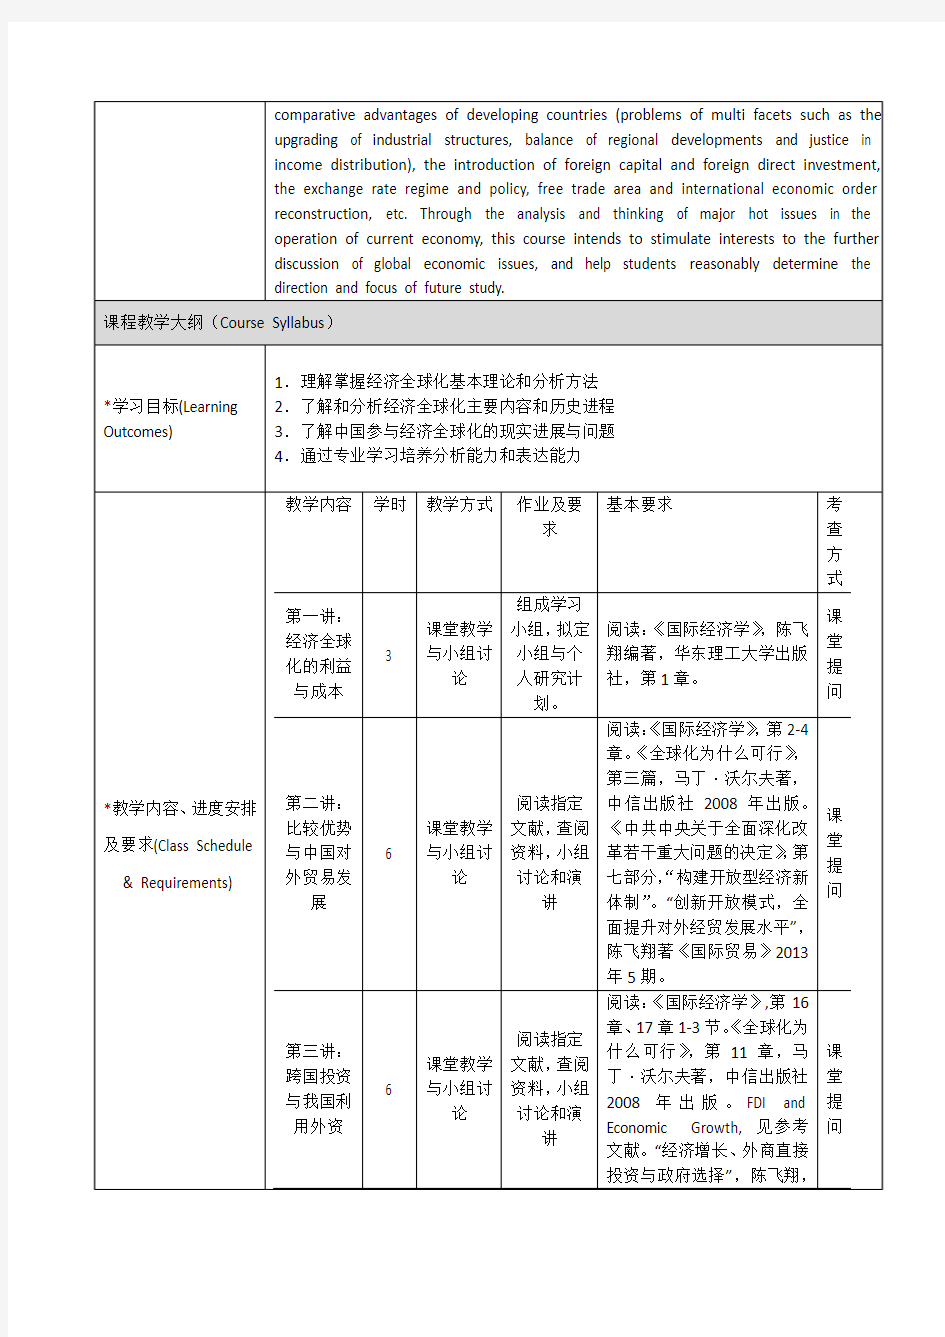 《经济全球化的分析视野》课程教学大纲-上海交通大学安泰经济与管理学院